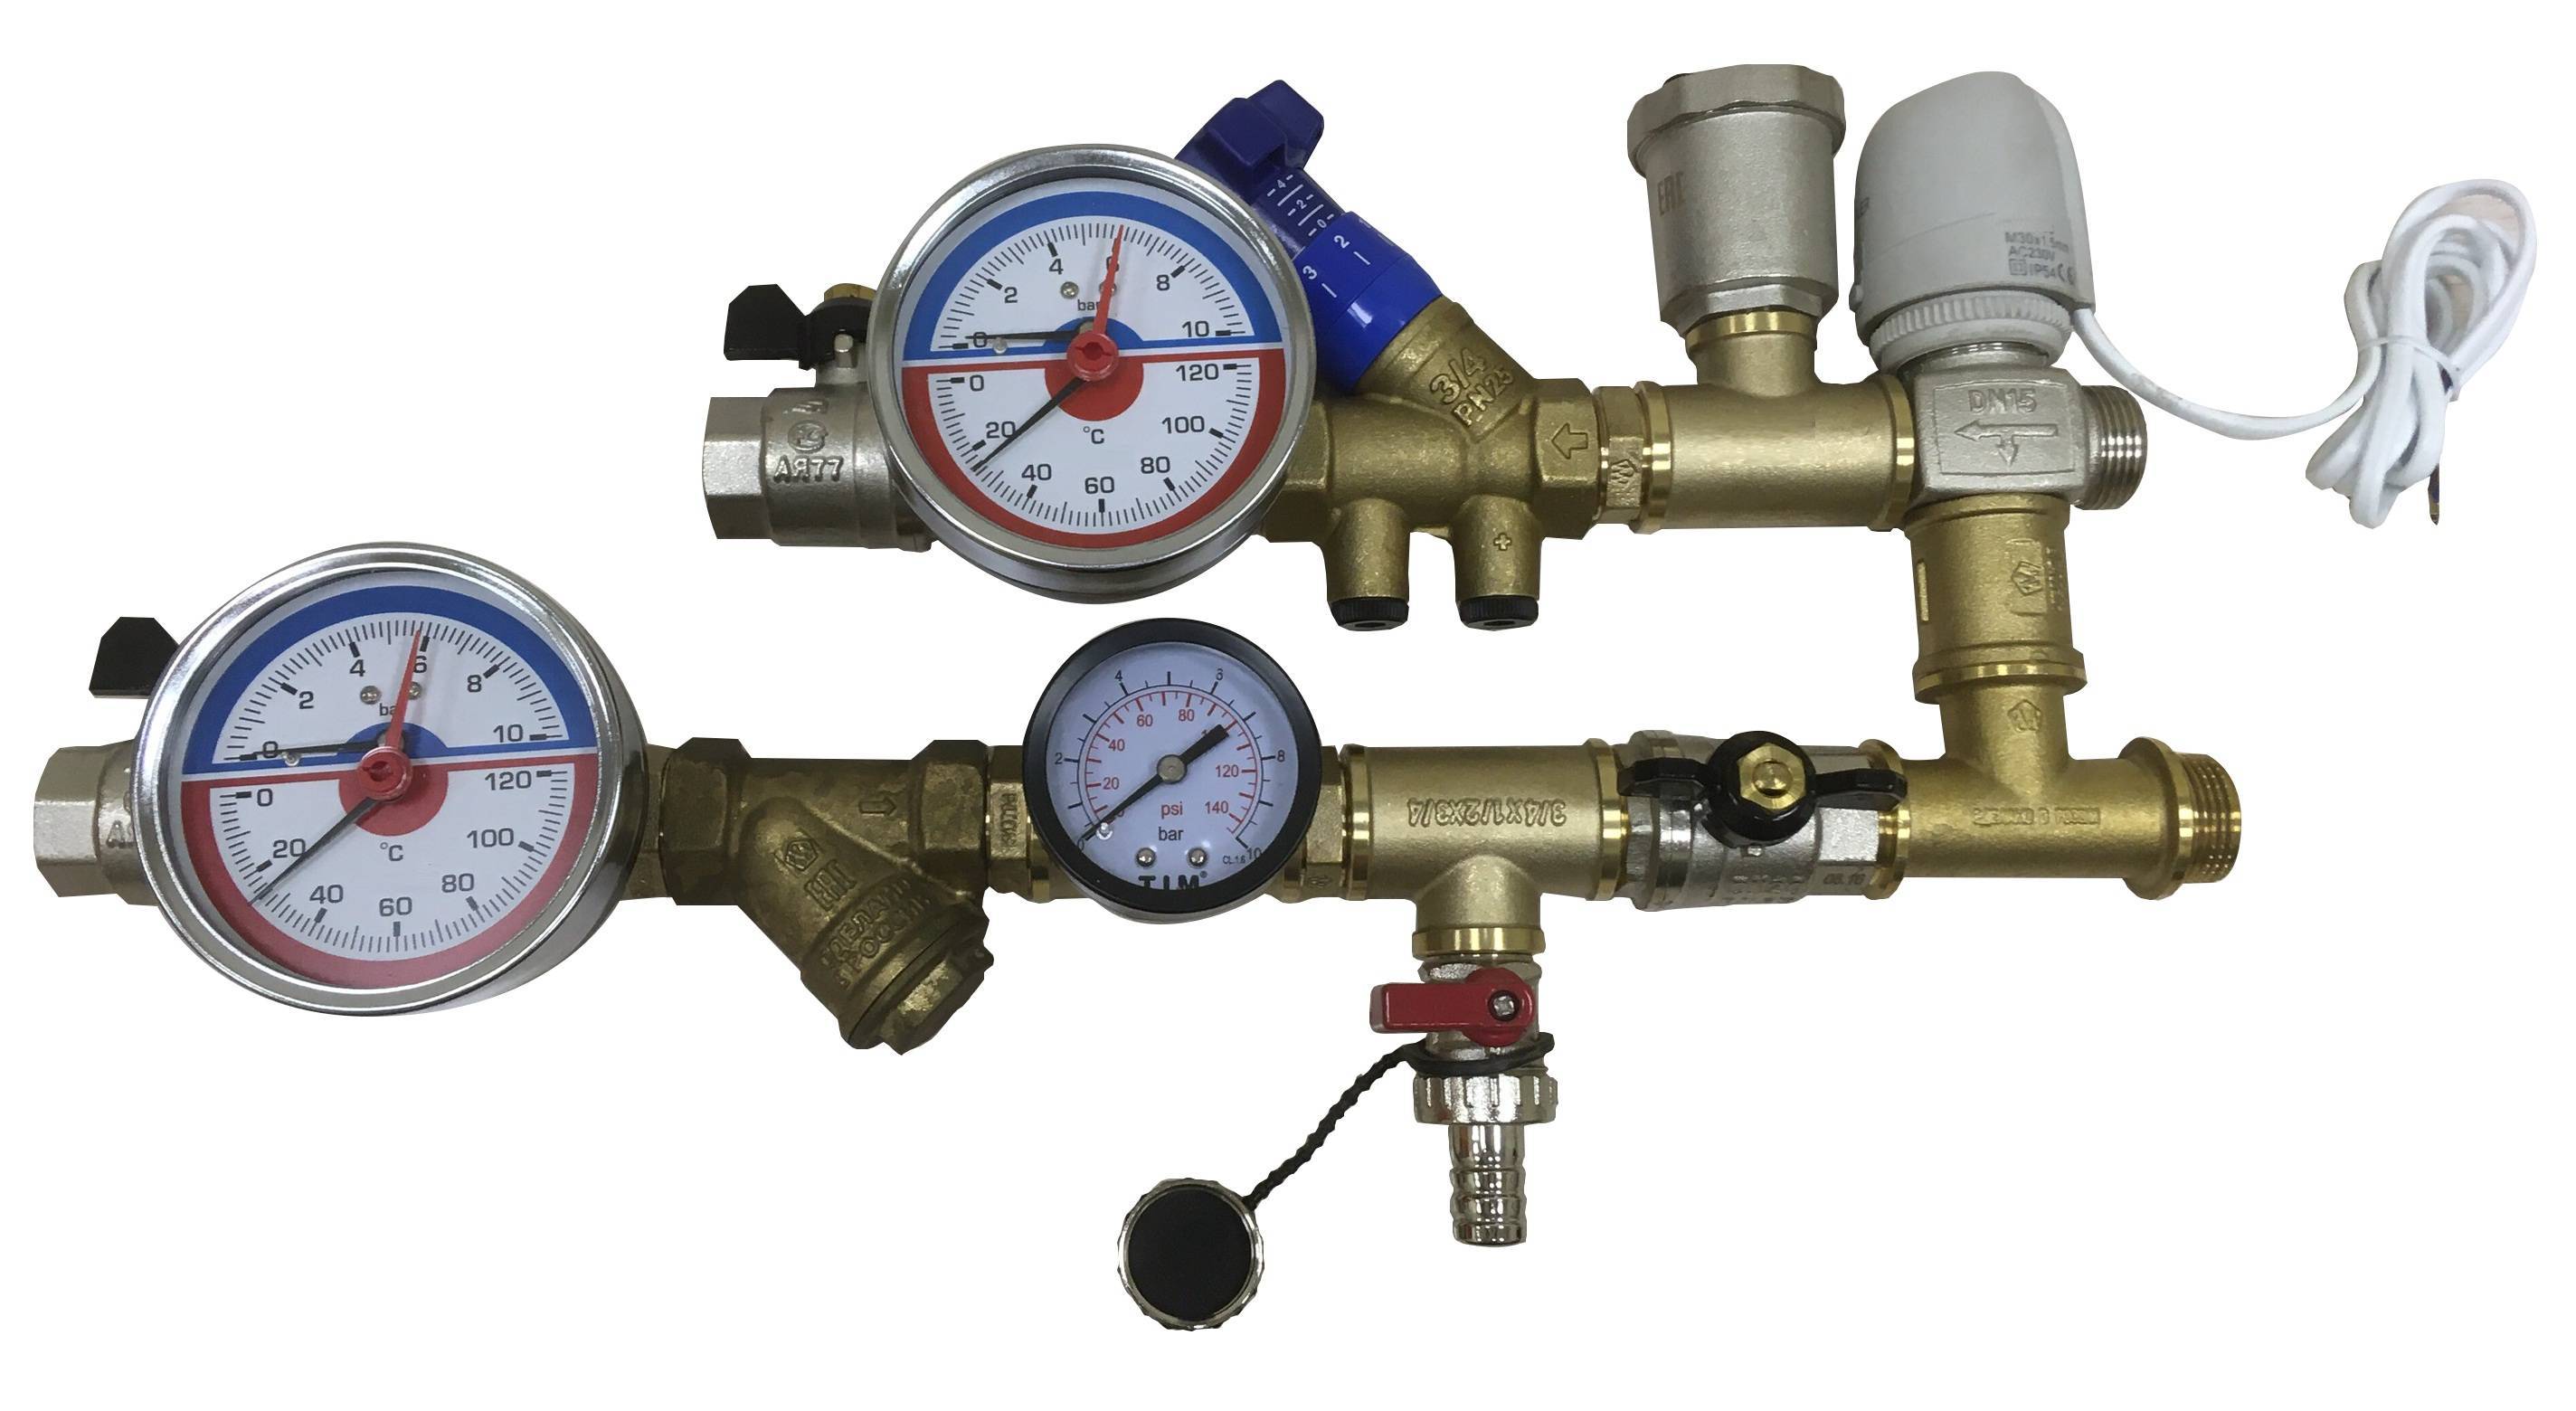 Виды клапанов для систем отопления, их назначение и функциональные особенности